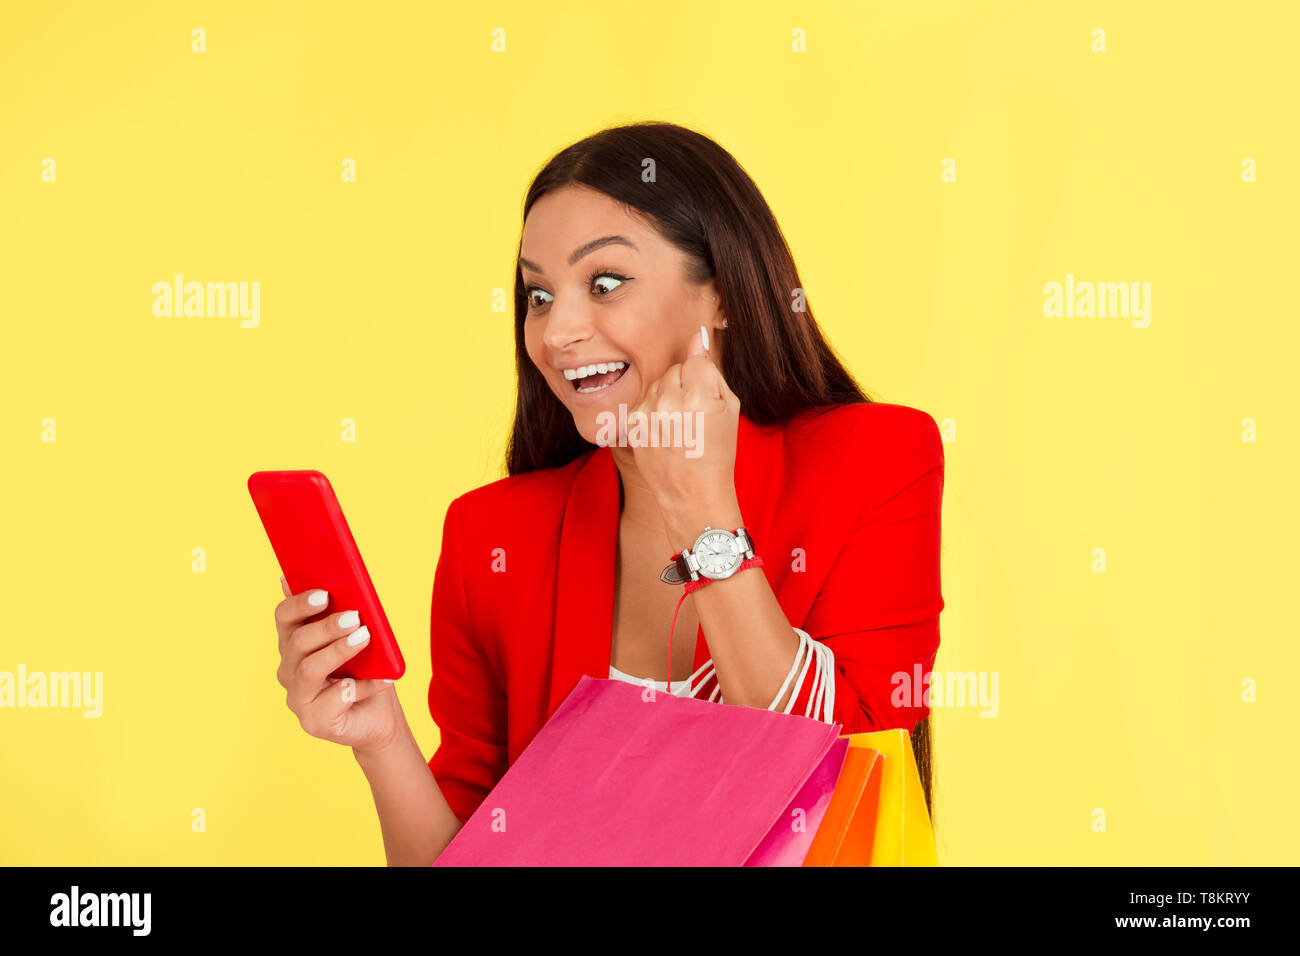 Euphorique excité Mid adult woman using smartphone holding shopping bags poing de pompage dans le bonheur isolé sur fond jaune. Ethnique multiculturelle Banque D'Images